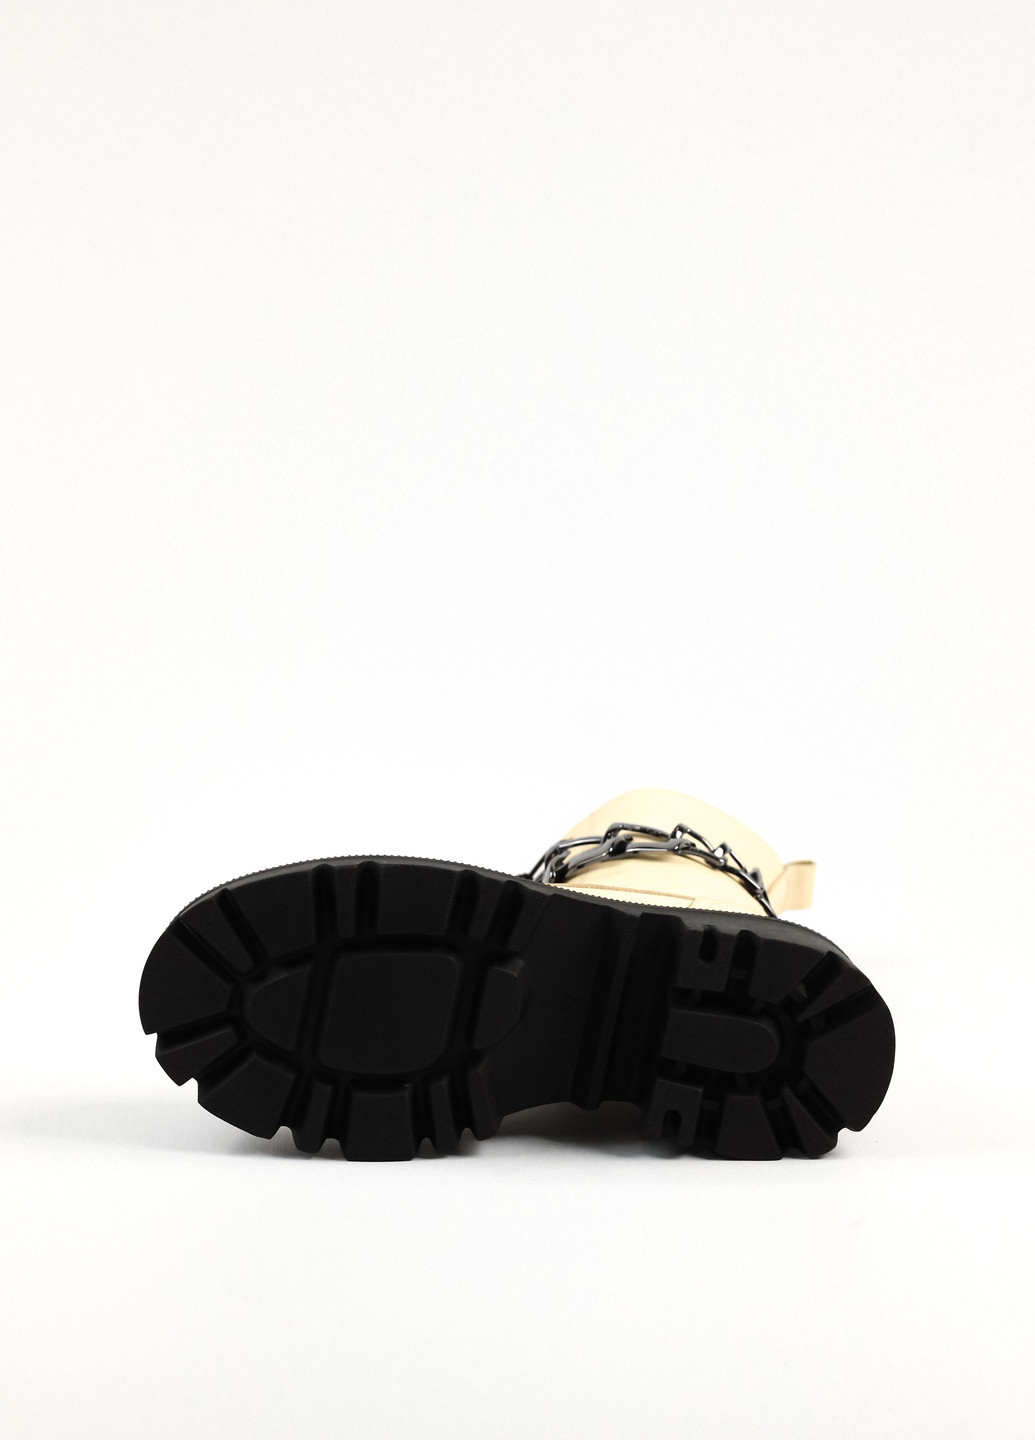 Зимние ботинки с цепью зимние Evromoda с цепочками